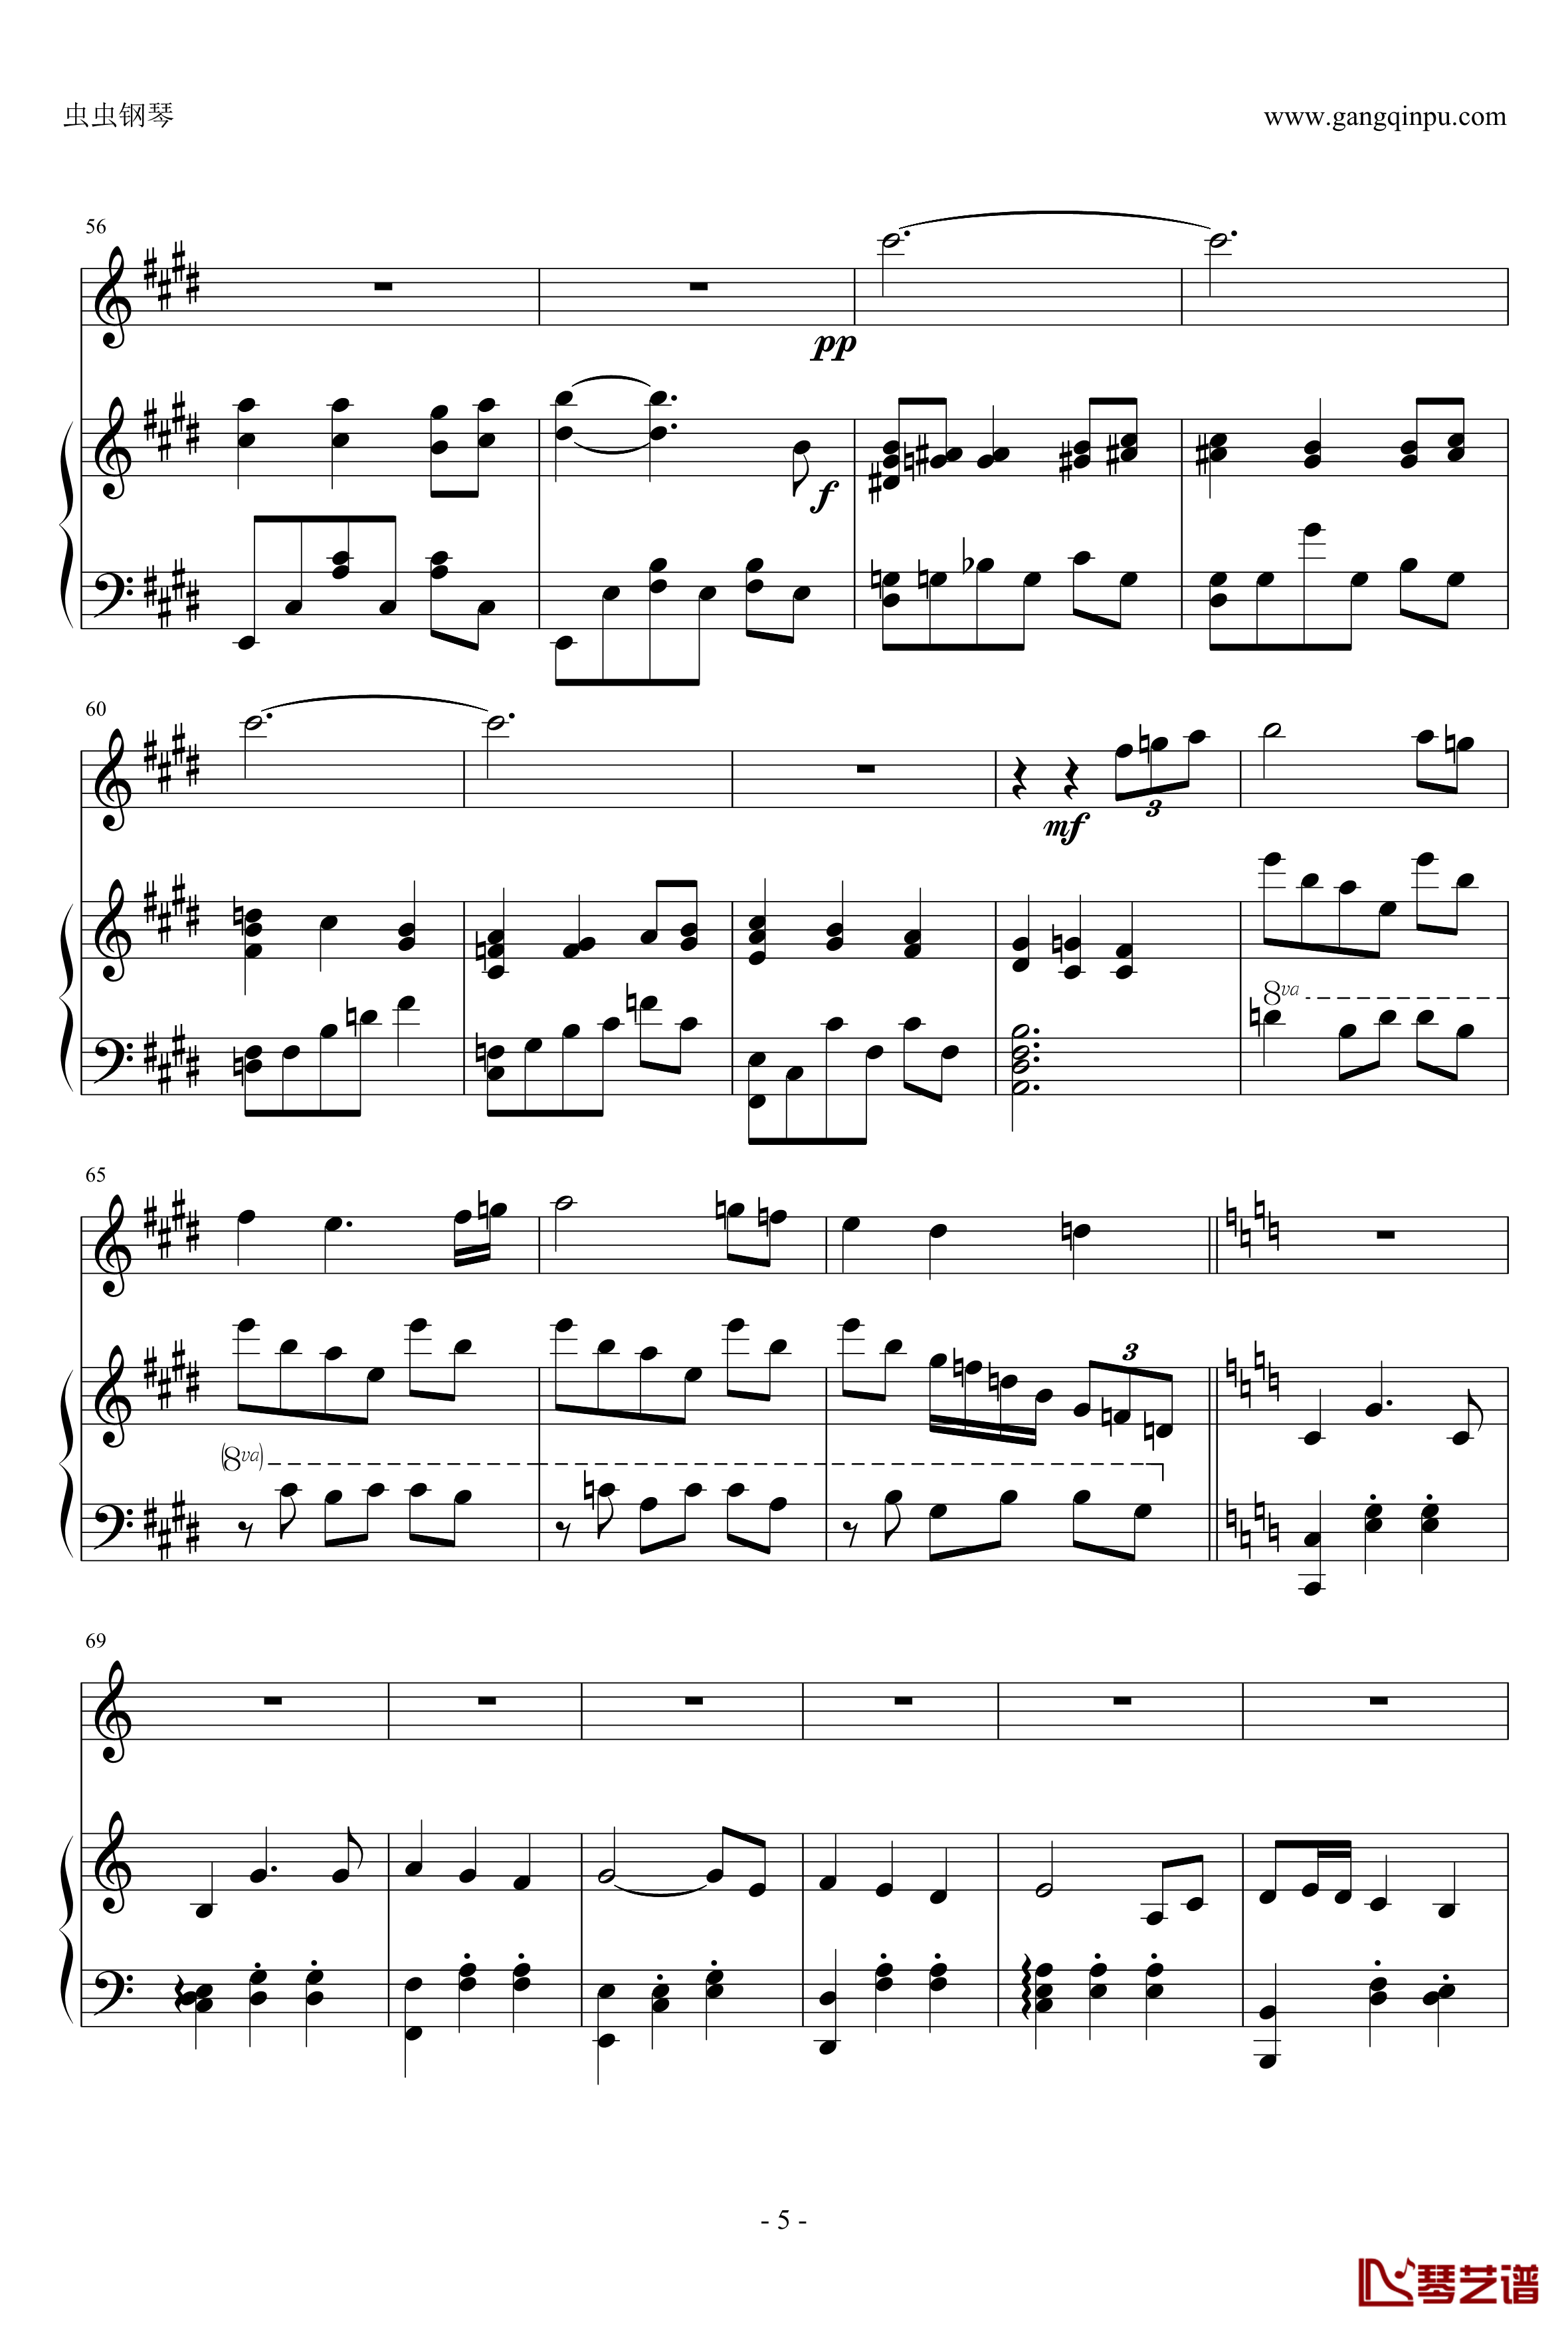 千寻的圆舞曲钢琴谱-钢琴+小提琴版-千与千寻5